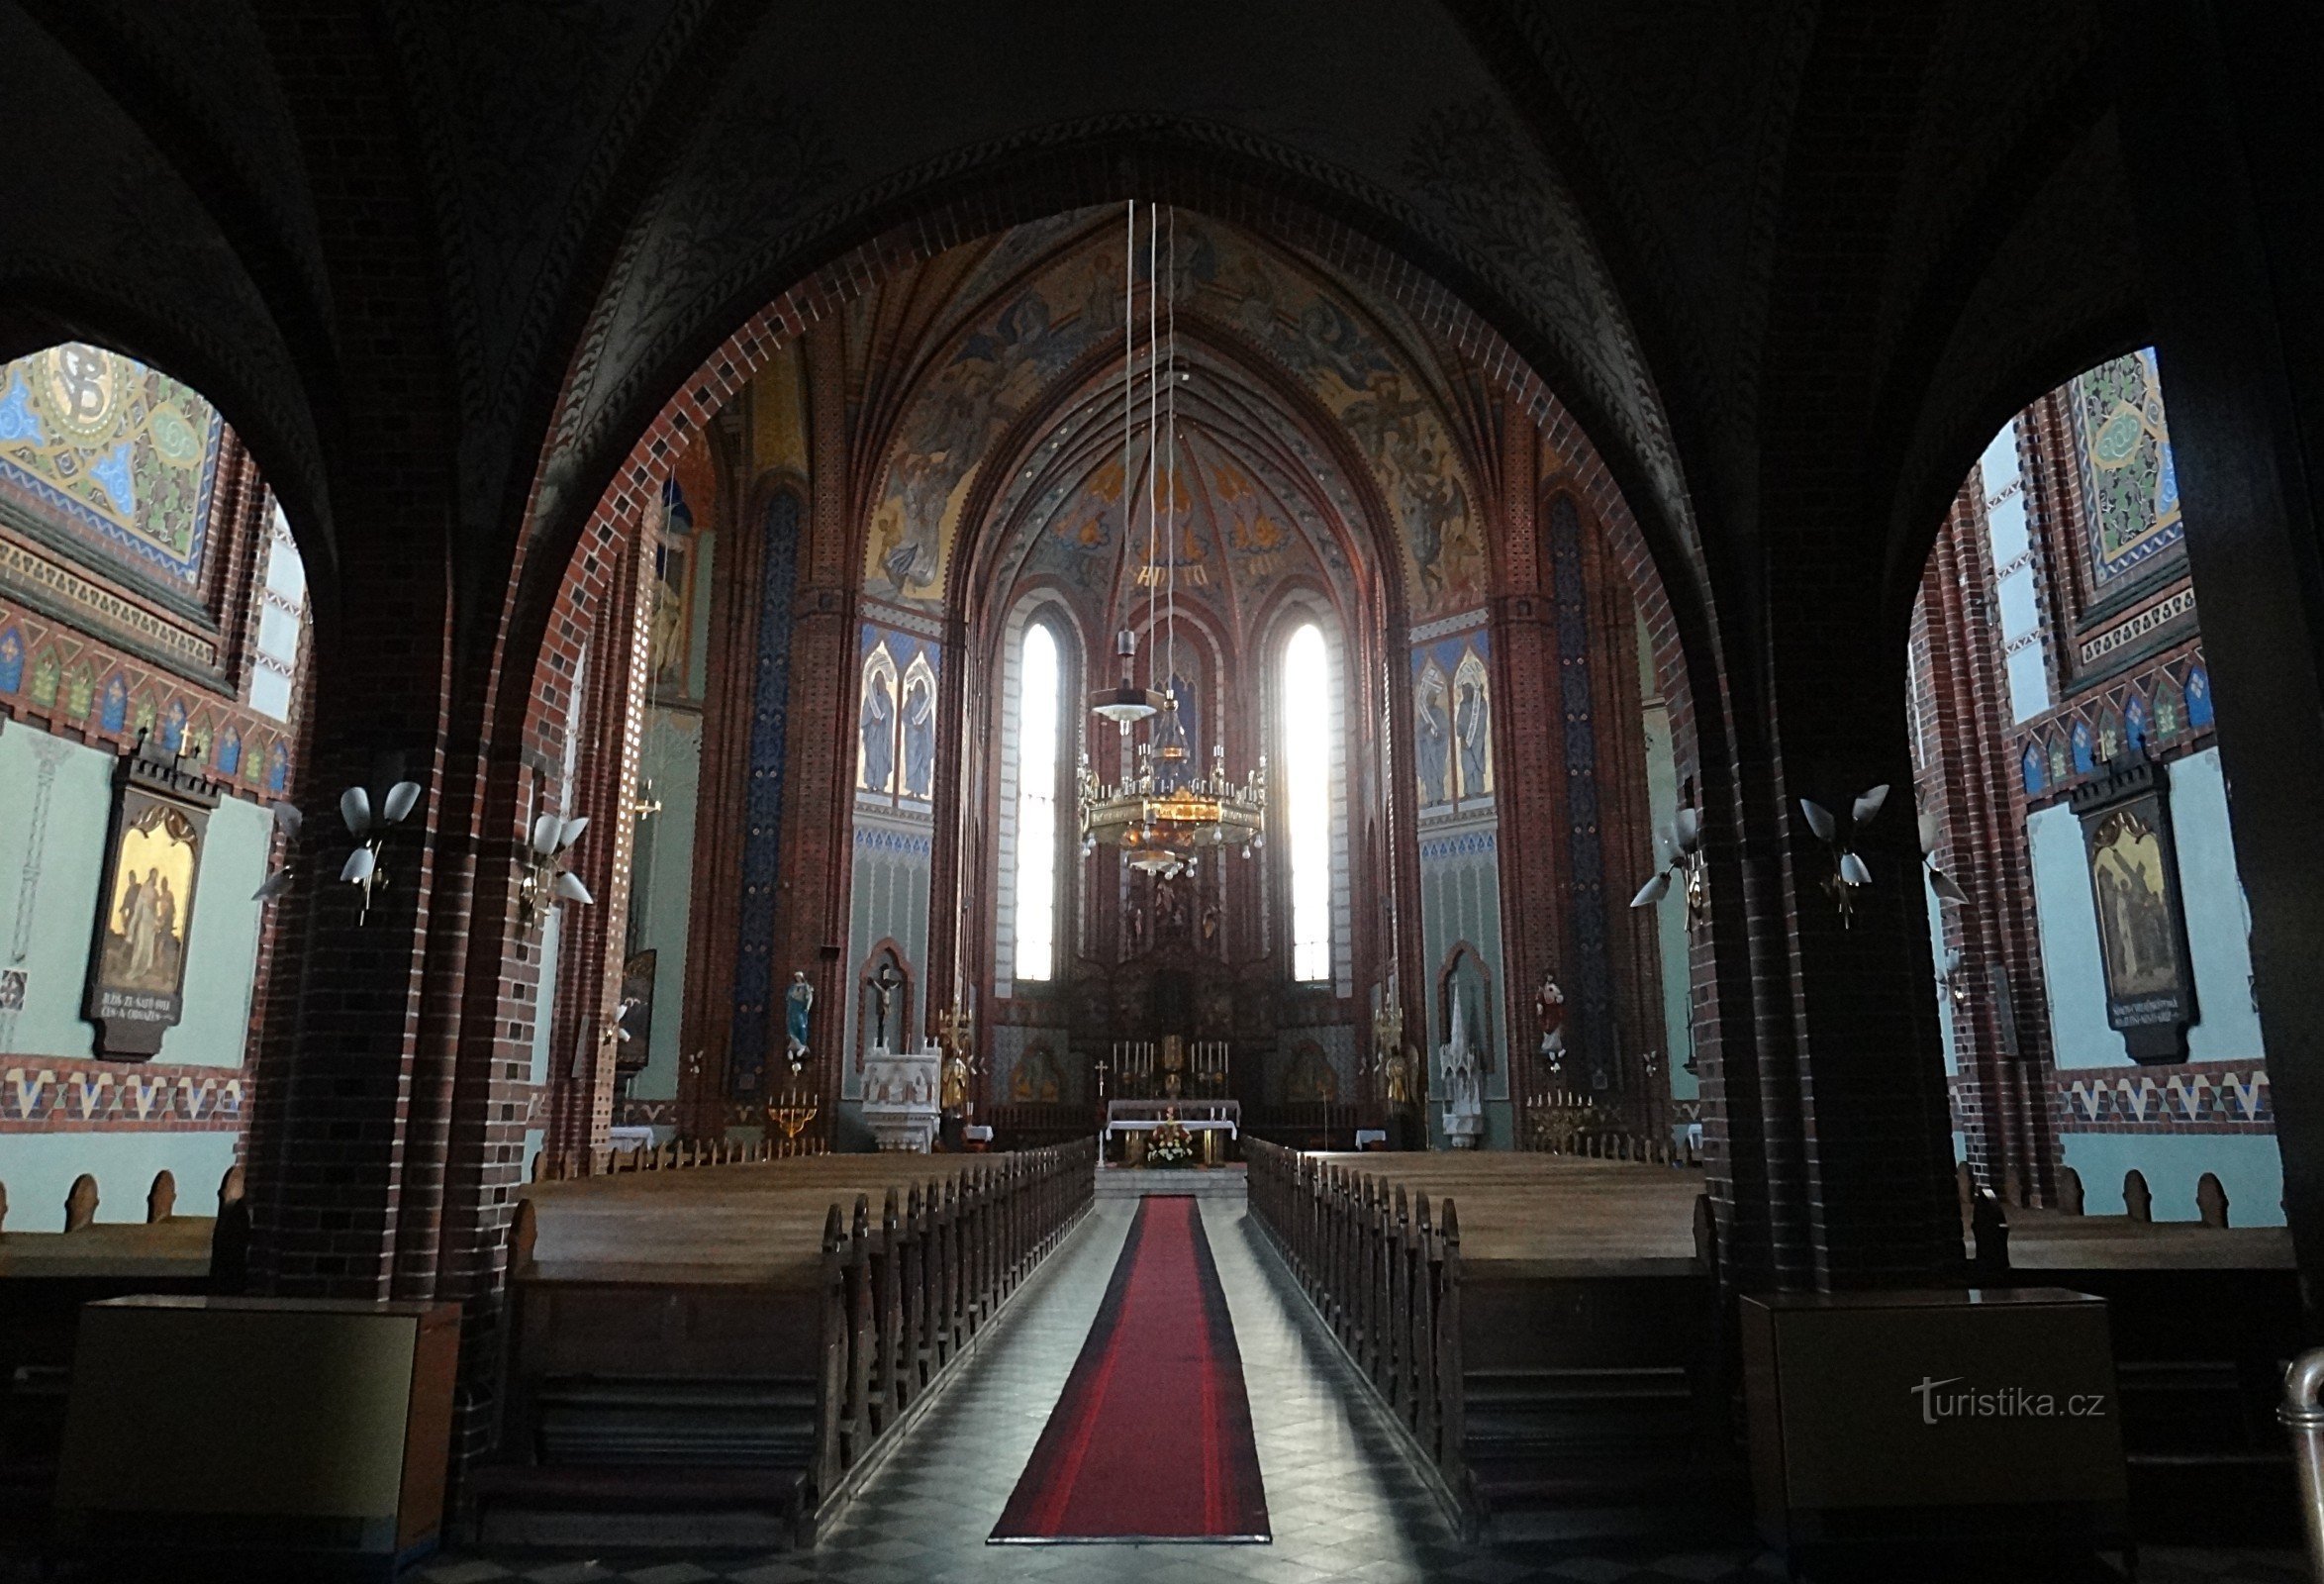 Ludgeřovice intérieur de l'église de St. Nicolas